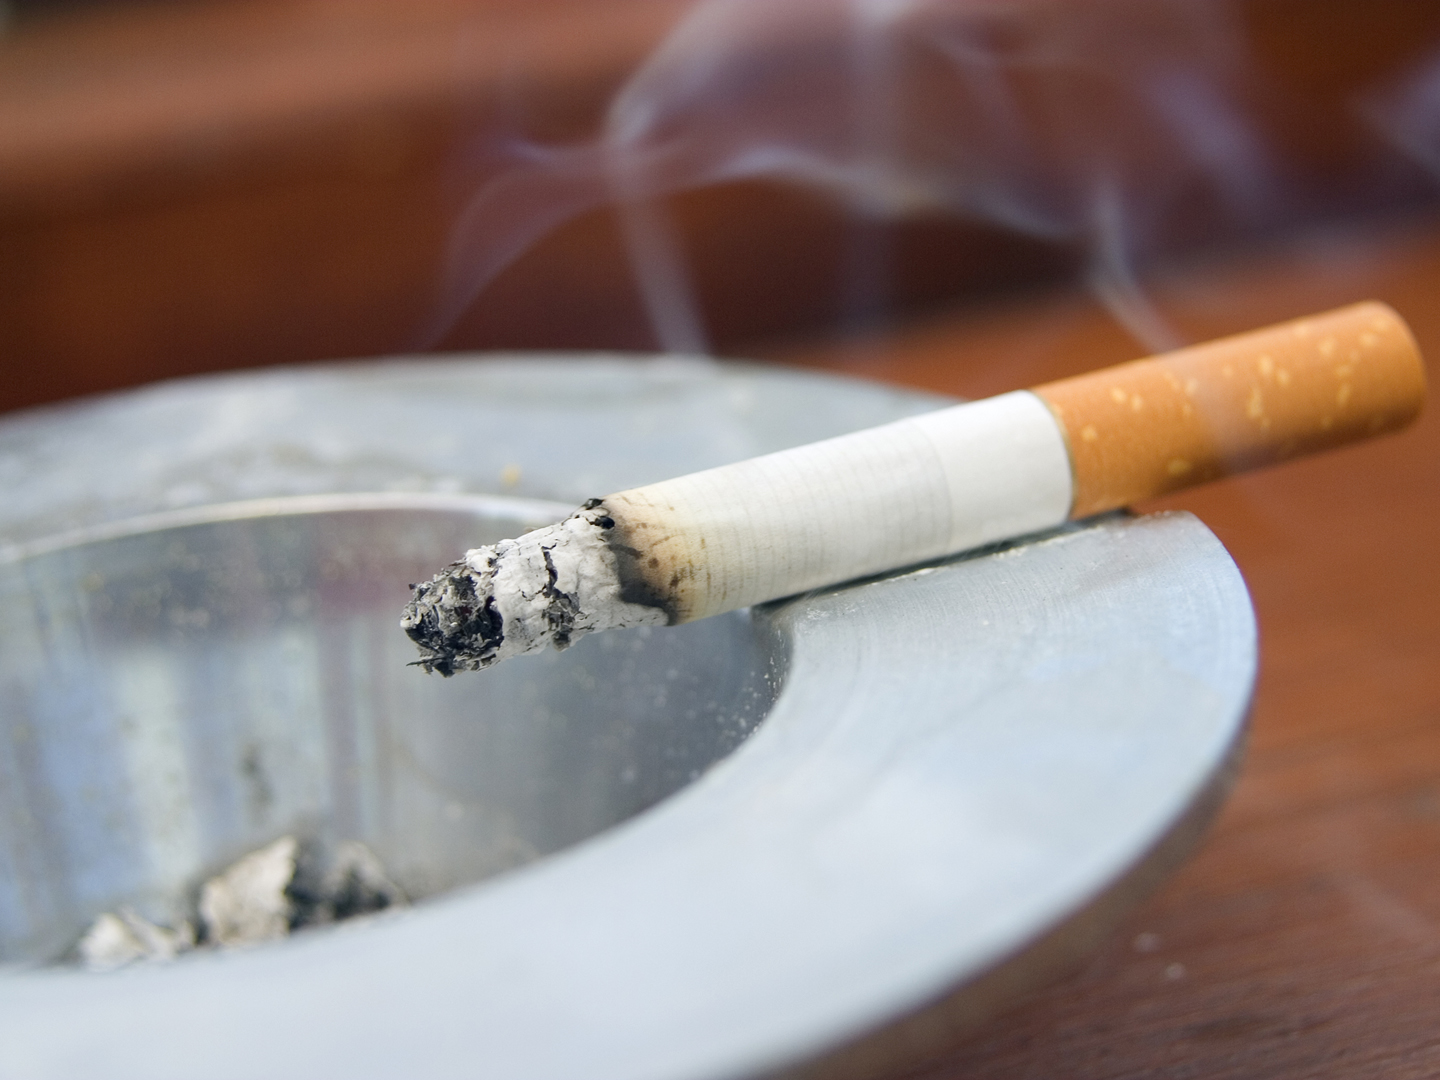 Burning cigarette smoking on ashtray---------------------Similar Images---------------------